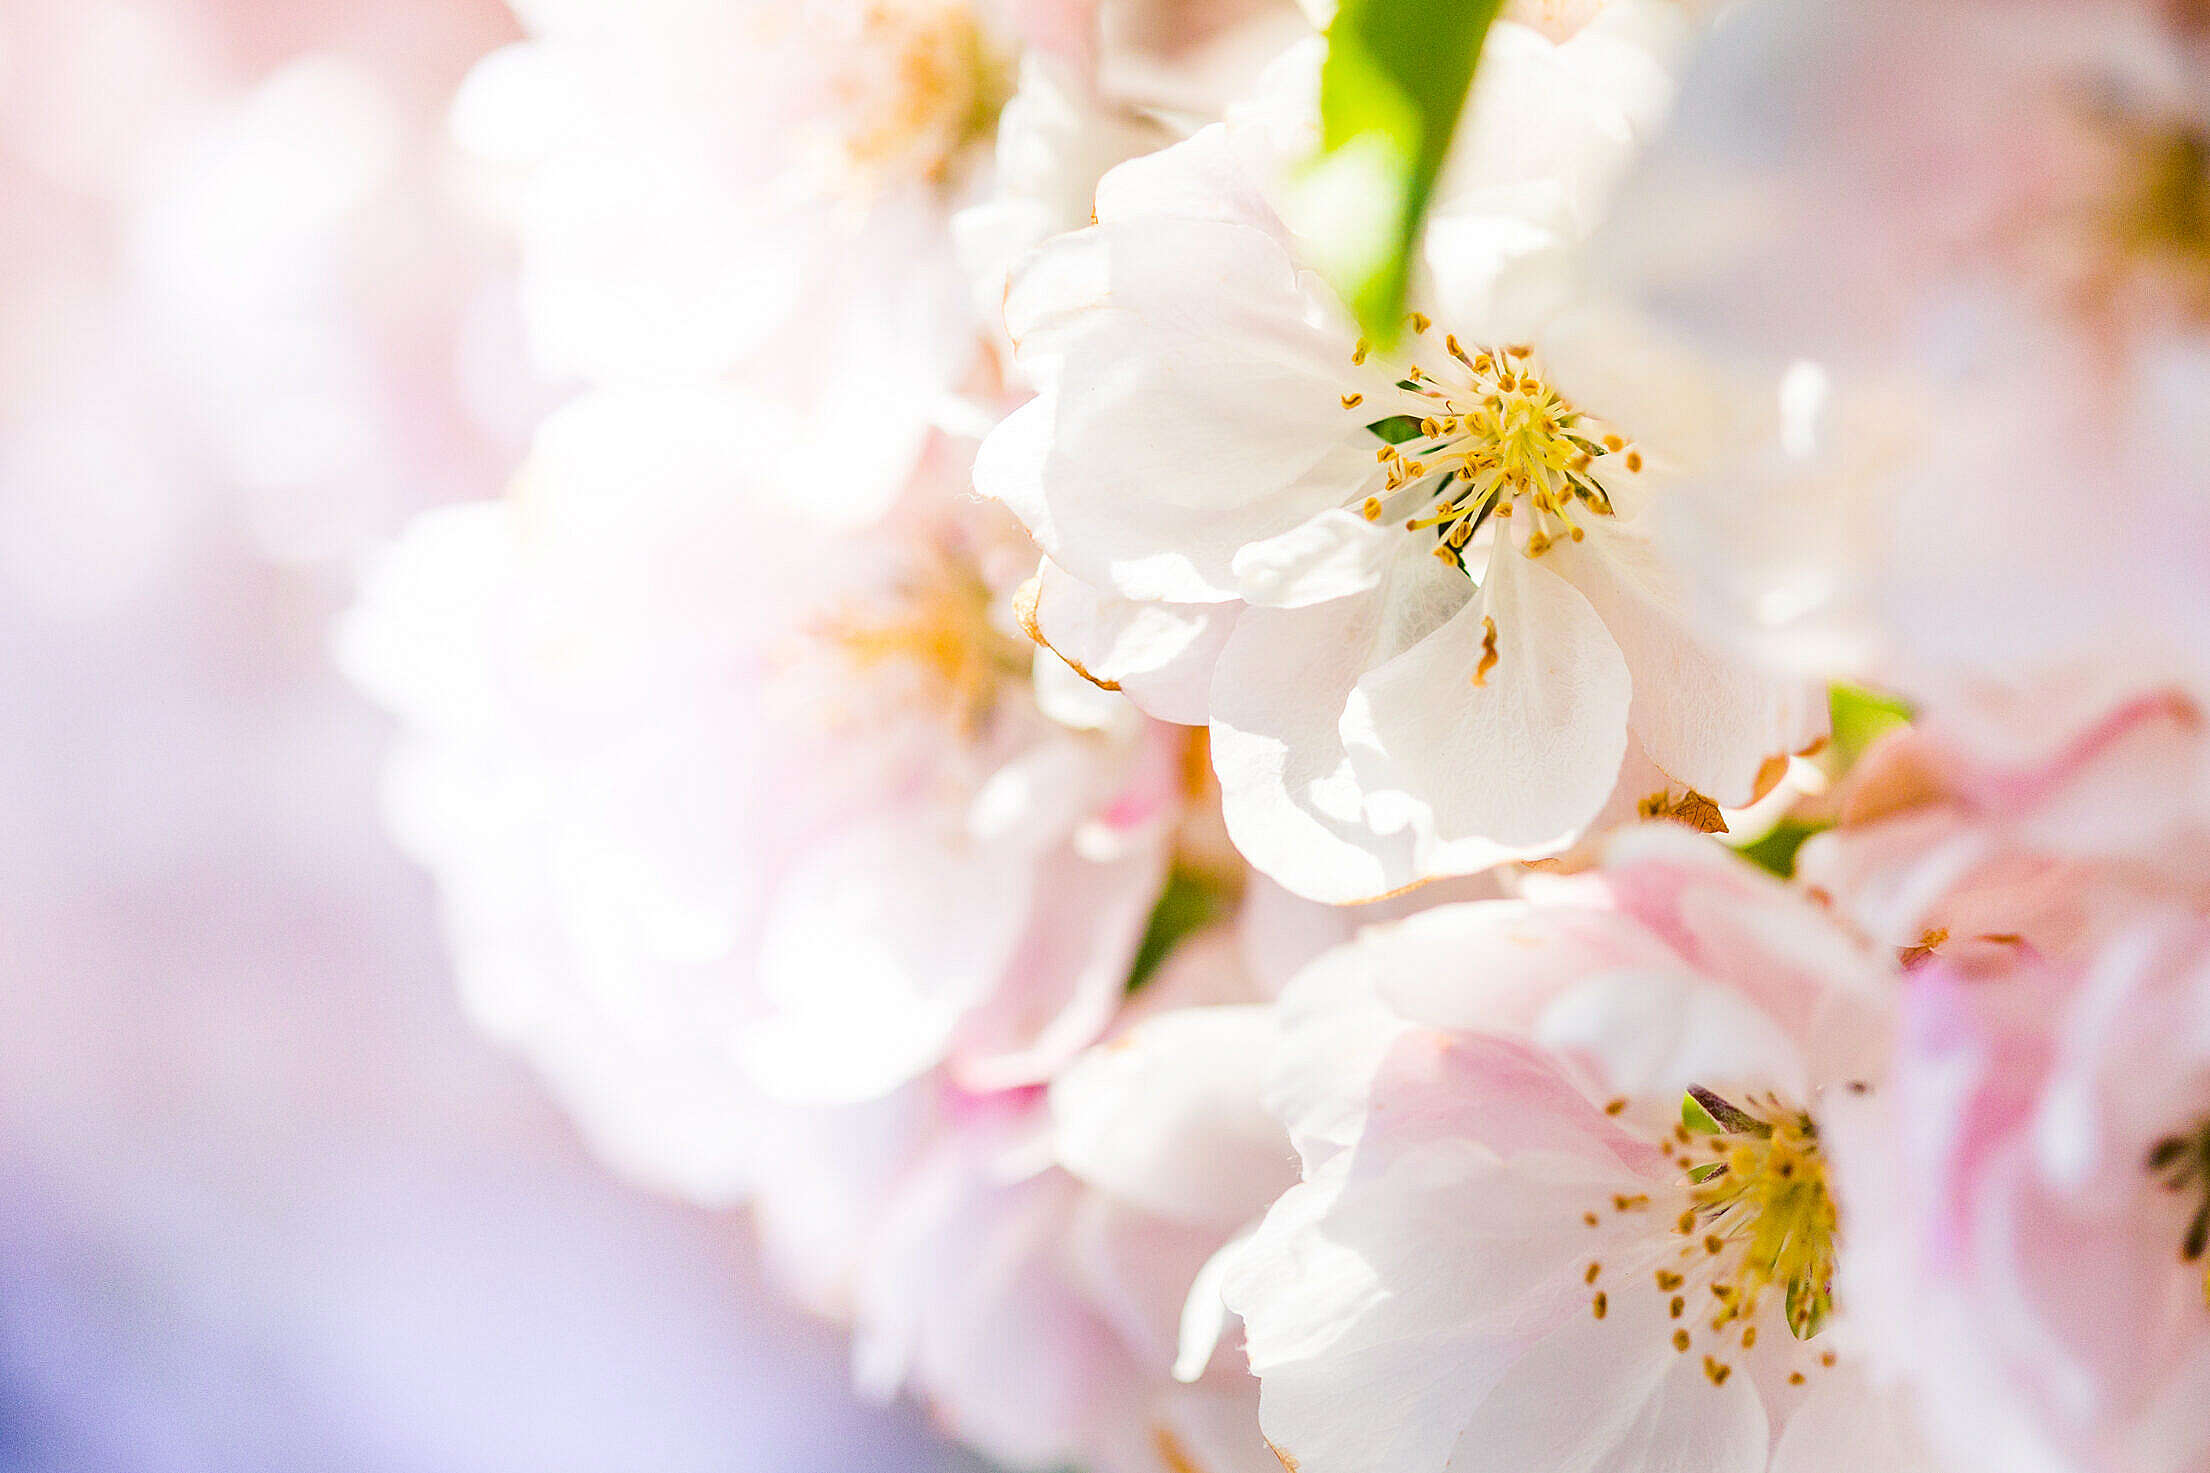 Wonderful Spring Blooms #2 Free Stock Photo